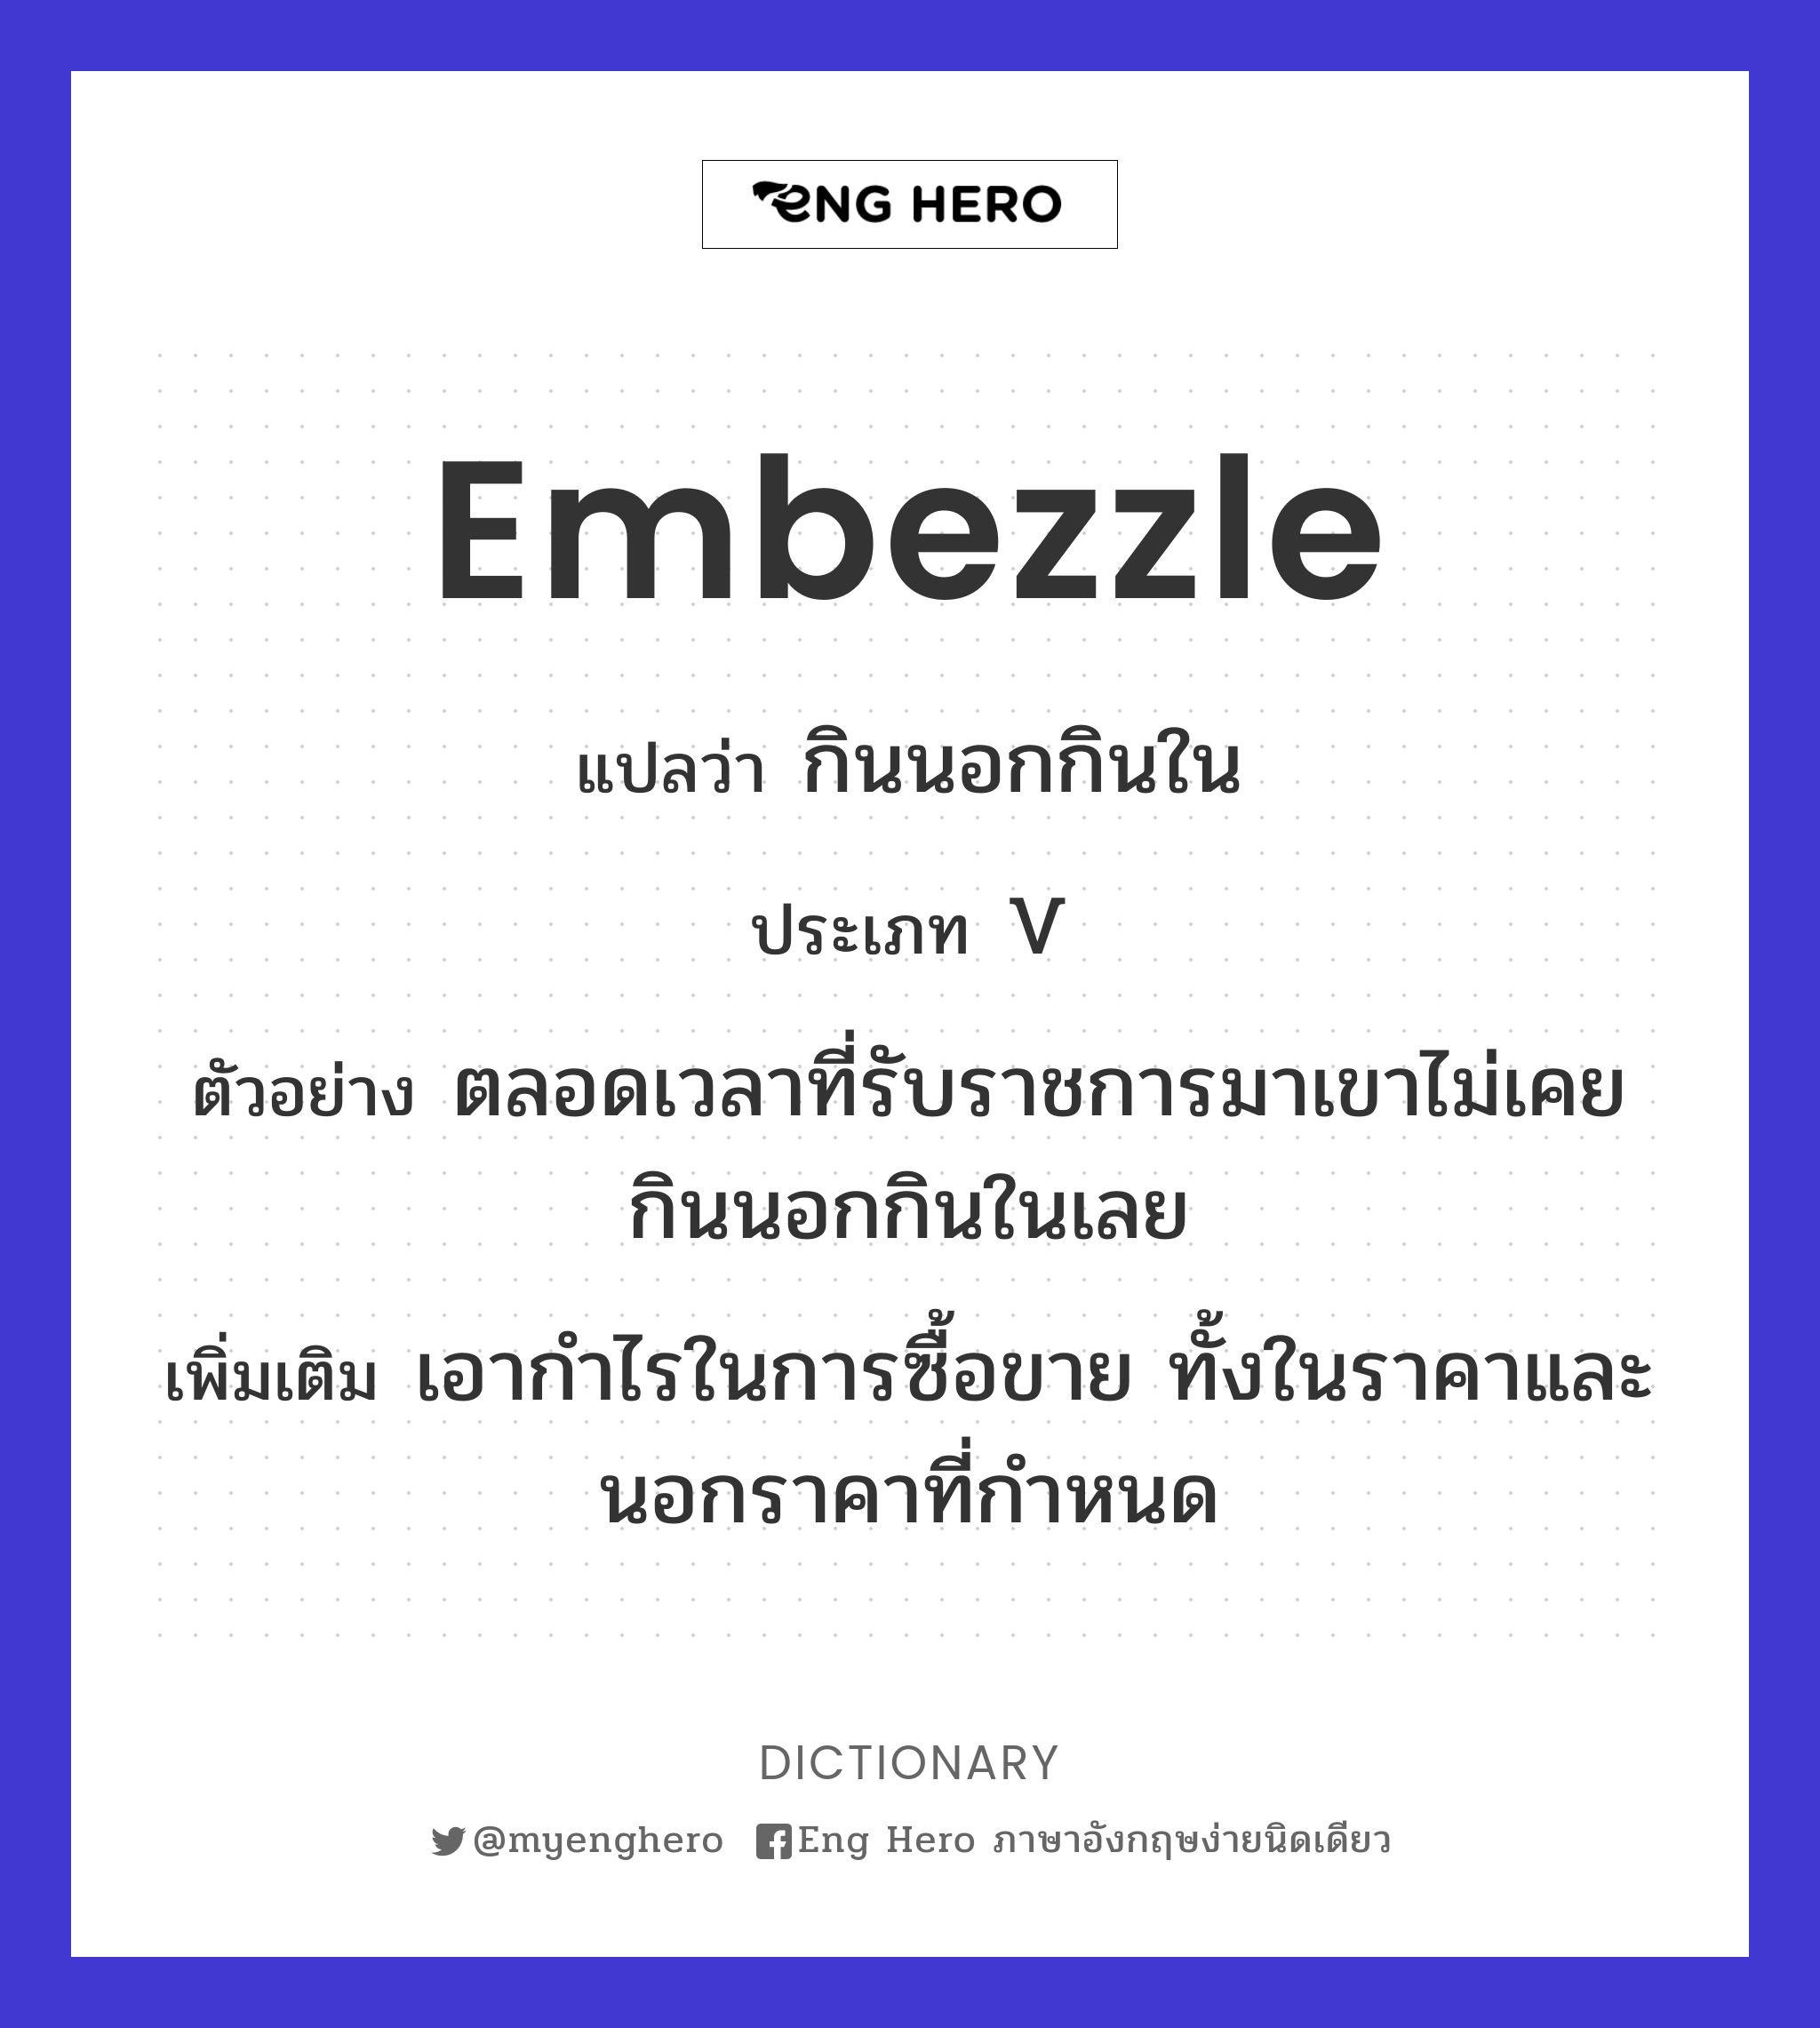 embezzle